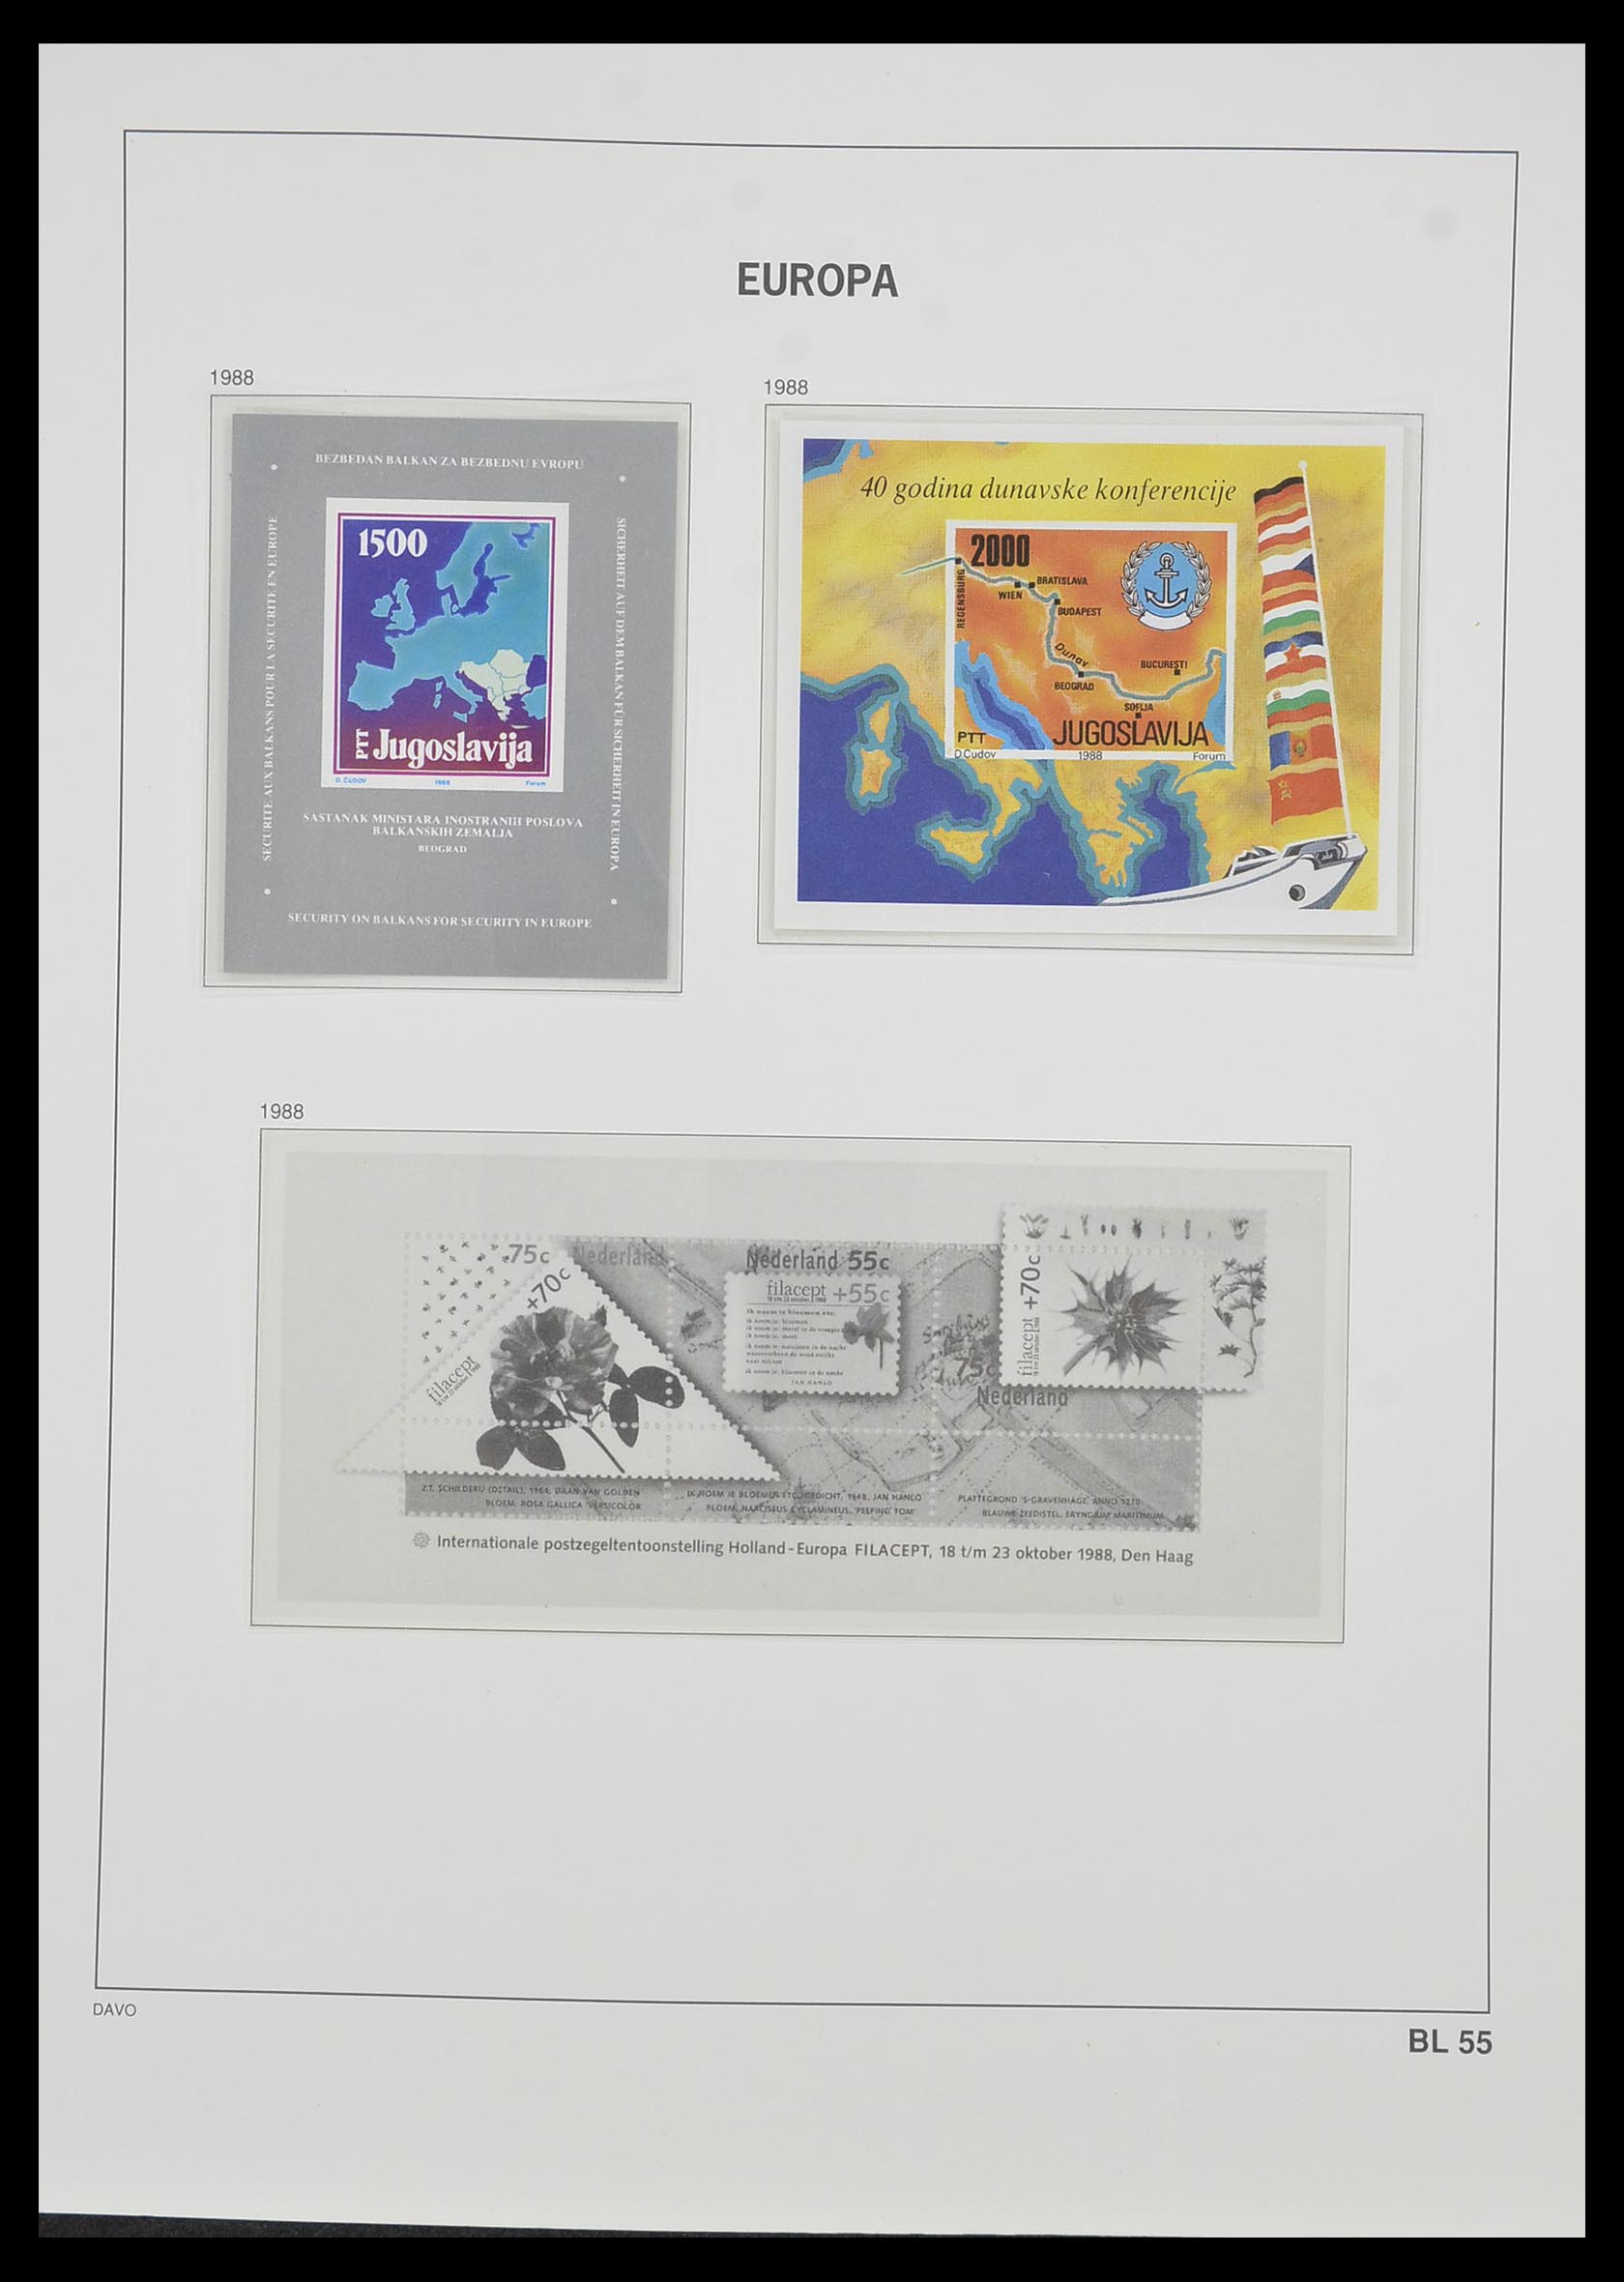 33985 053 - Stamp collection 33985 Europa CEPT souvenir sheets 1974-2014.